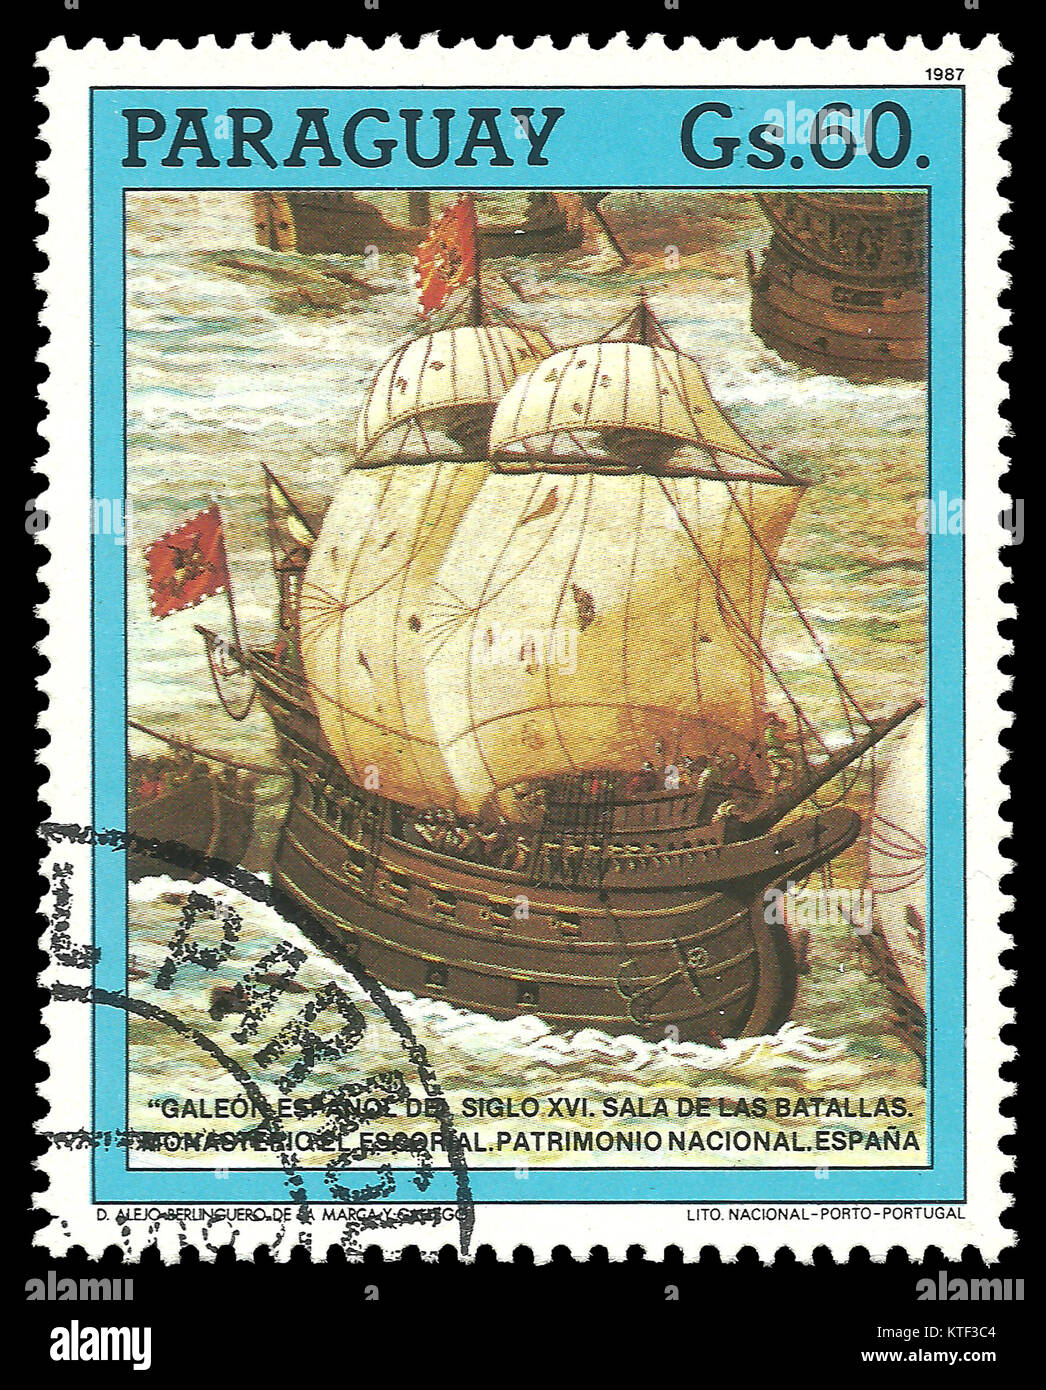 Paraguay - timbres en 1987 : Couleur edition le 500e anniversaire de la découverte de l'Amérique, montre galion espagnol du xvie siècle Banque D'Images